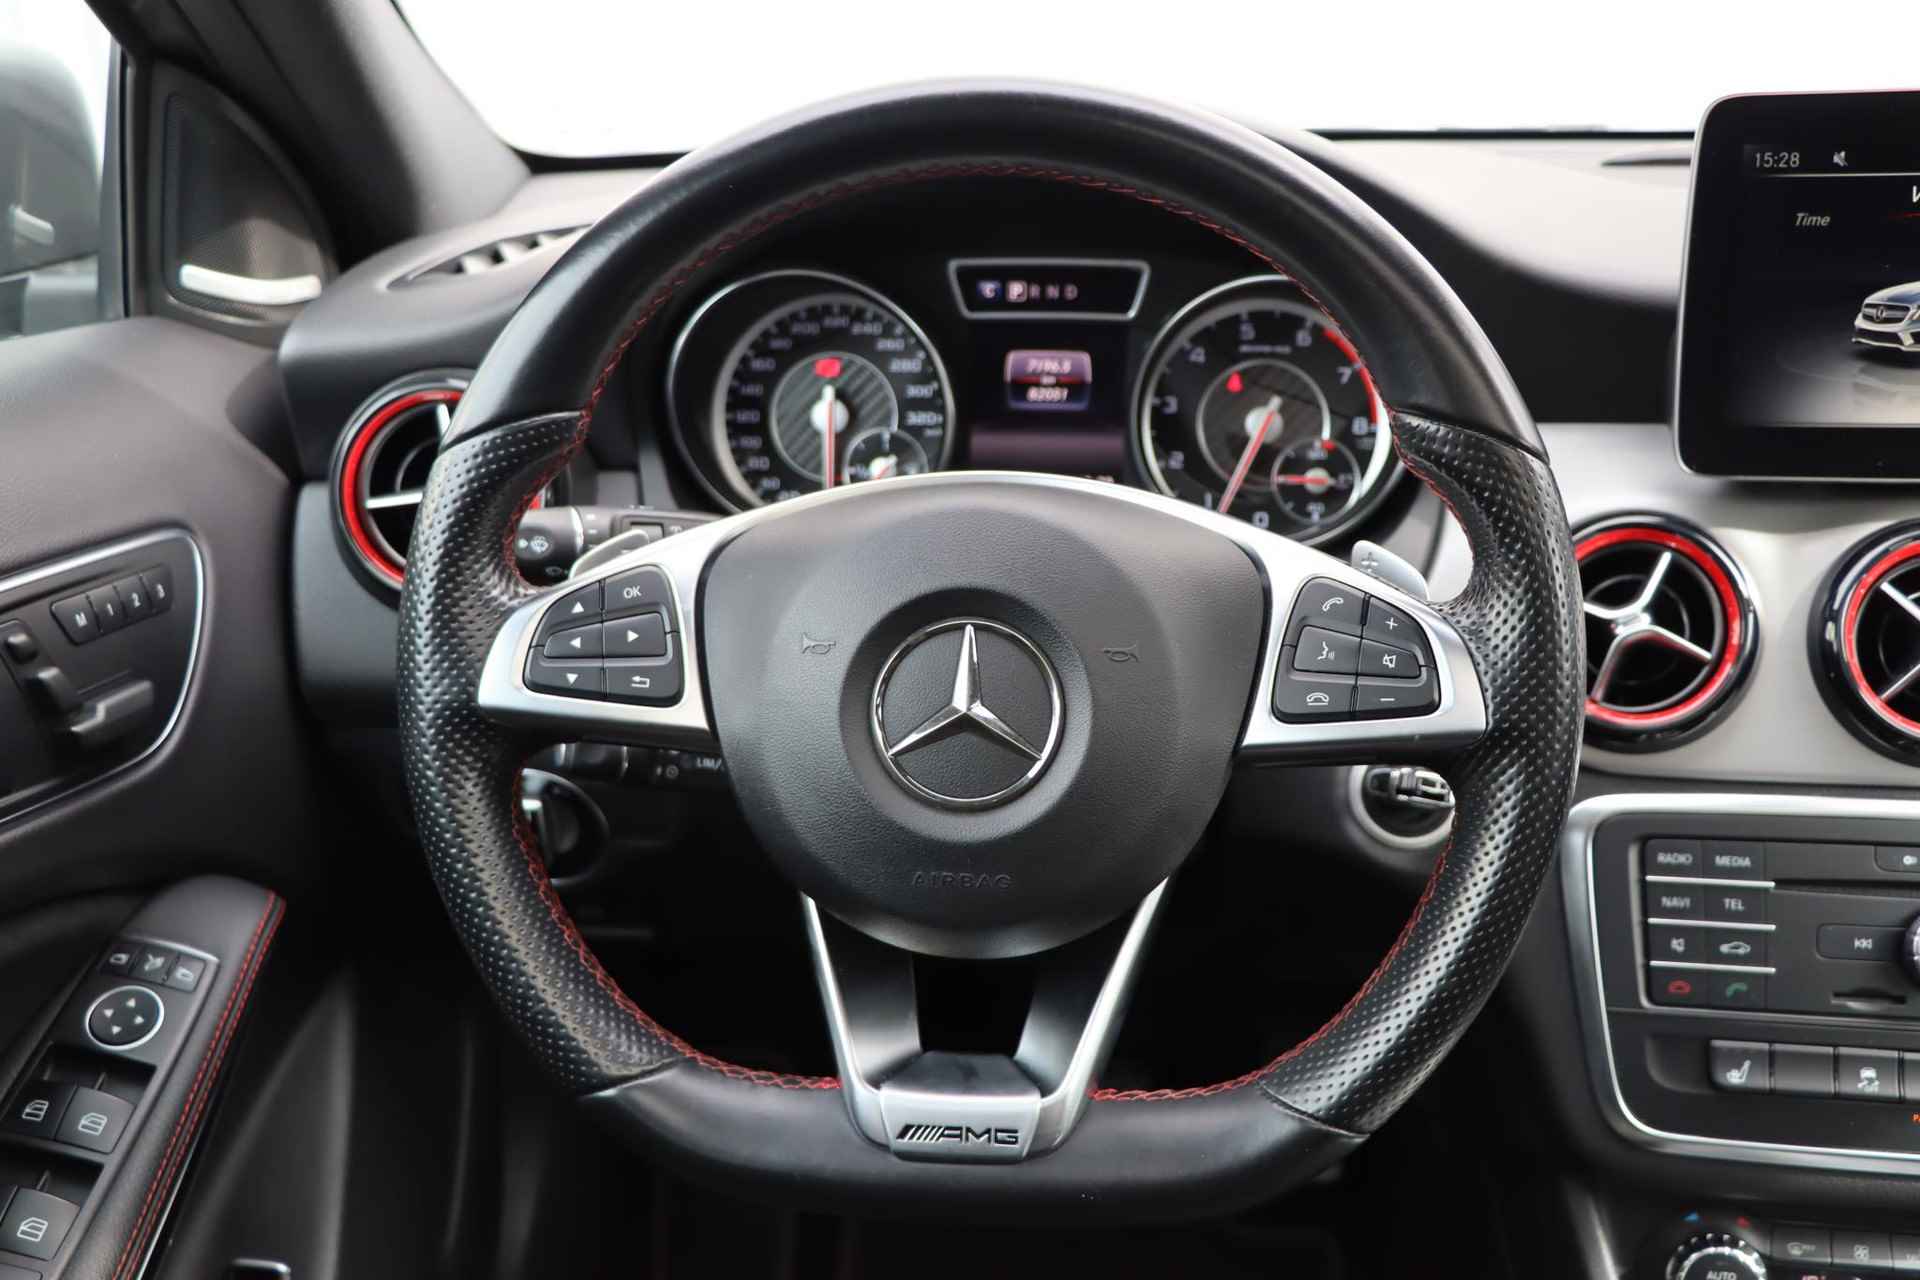 Mercedes-Benz GLA-klasse AMG 45 4MATIC | Panorama dak | Achteruitrijcamera | elektrische bestuurdersstoel | LED koplampen | elektronische achterklep | - 26/38